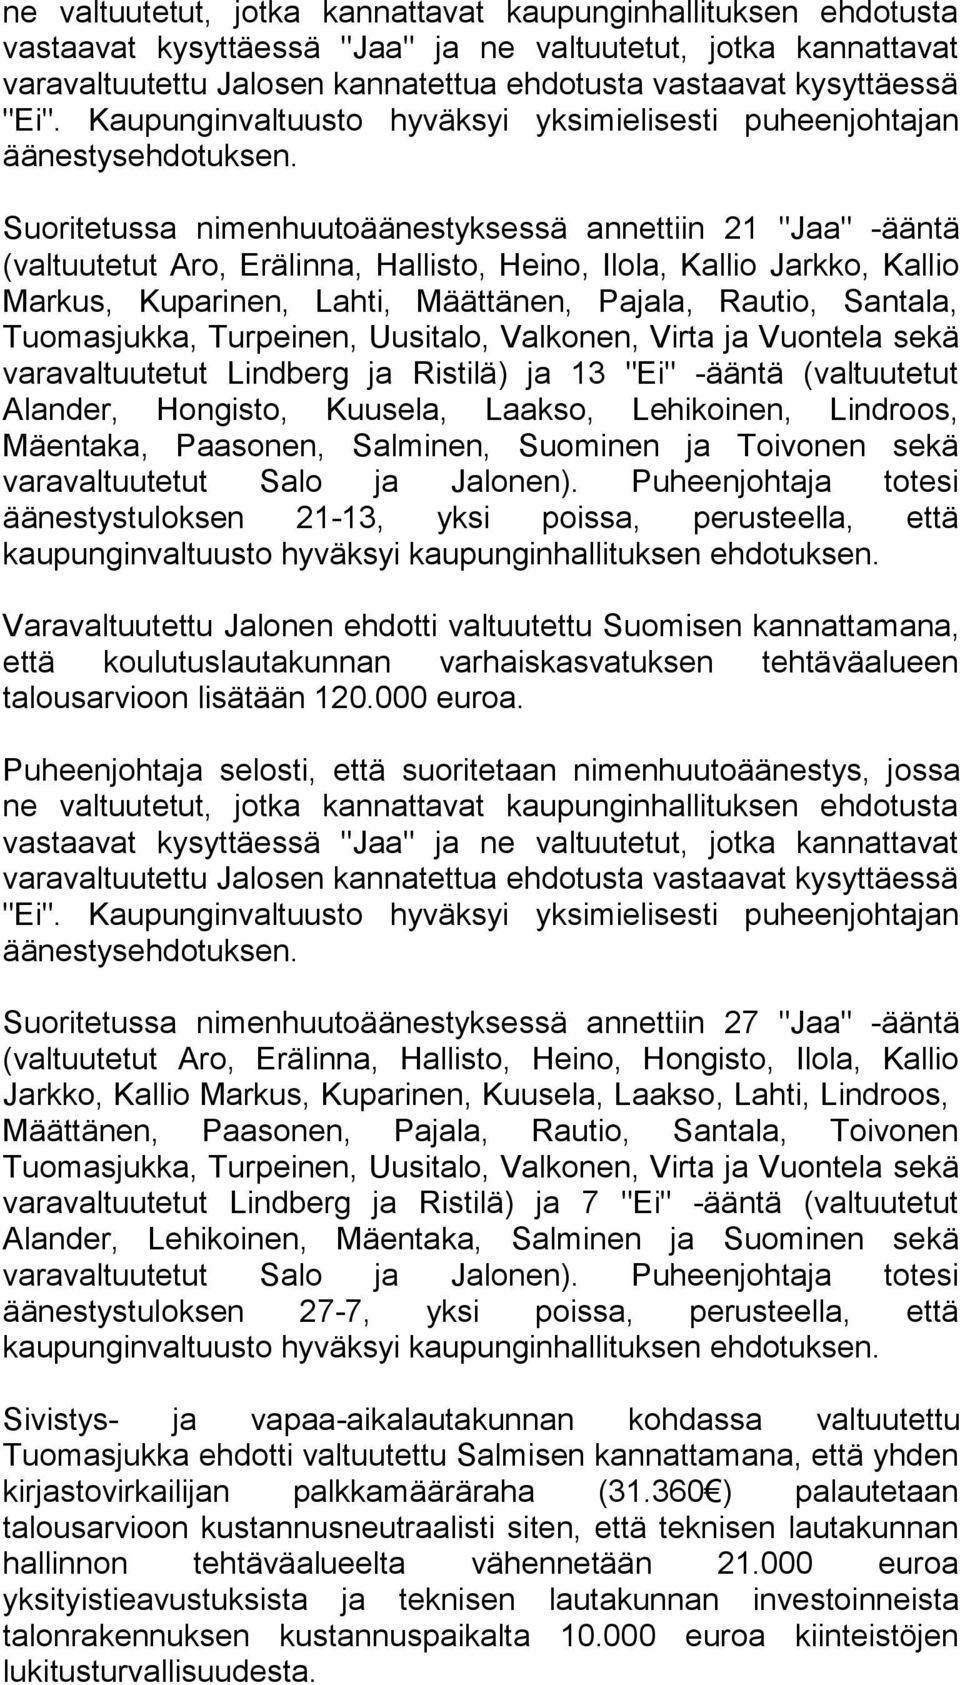 Suoritetussa nimenhuutoäänestyksessä annettiin 21 "Jaa" -ääntä (valtuutetut Aro, Erälinna, Hallisto, Heino, Ilola, Kallio Jarkko, Kallio Markus, Kuparinen, Lahti, Määttänen, Pajala, Rautio, Santala,